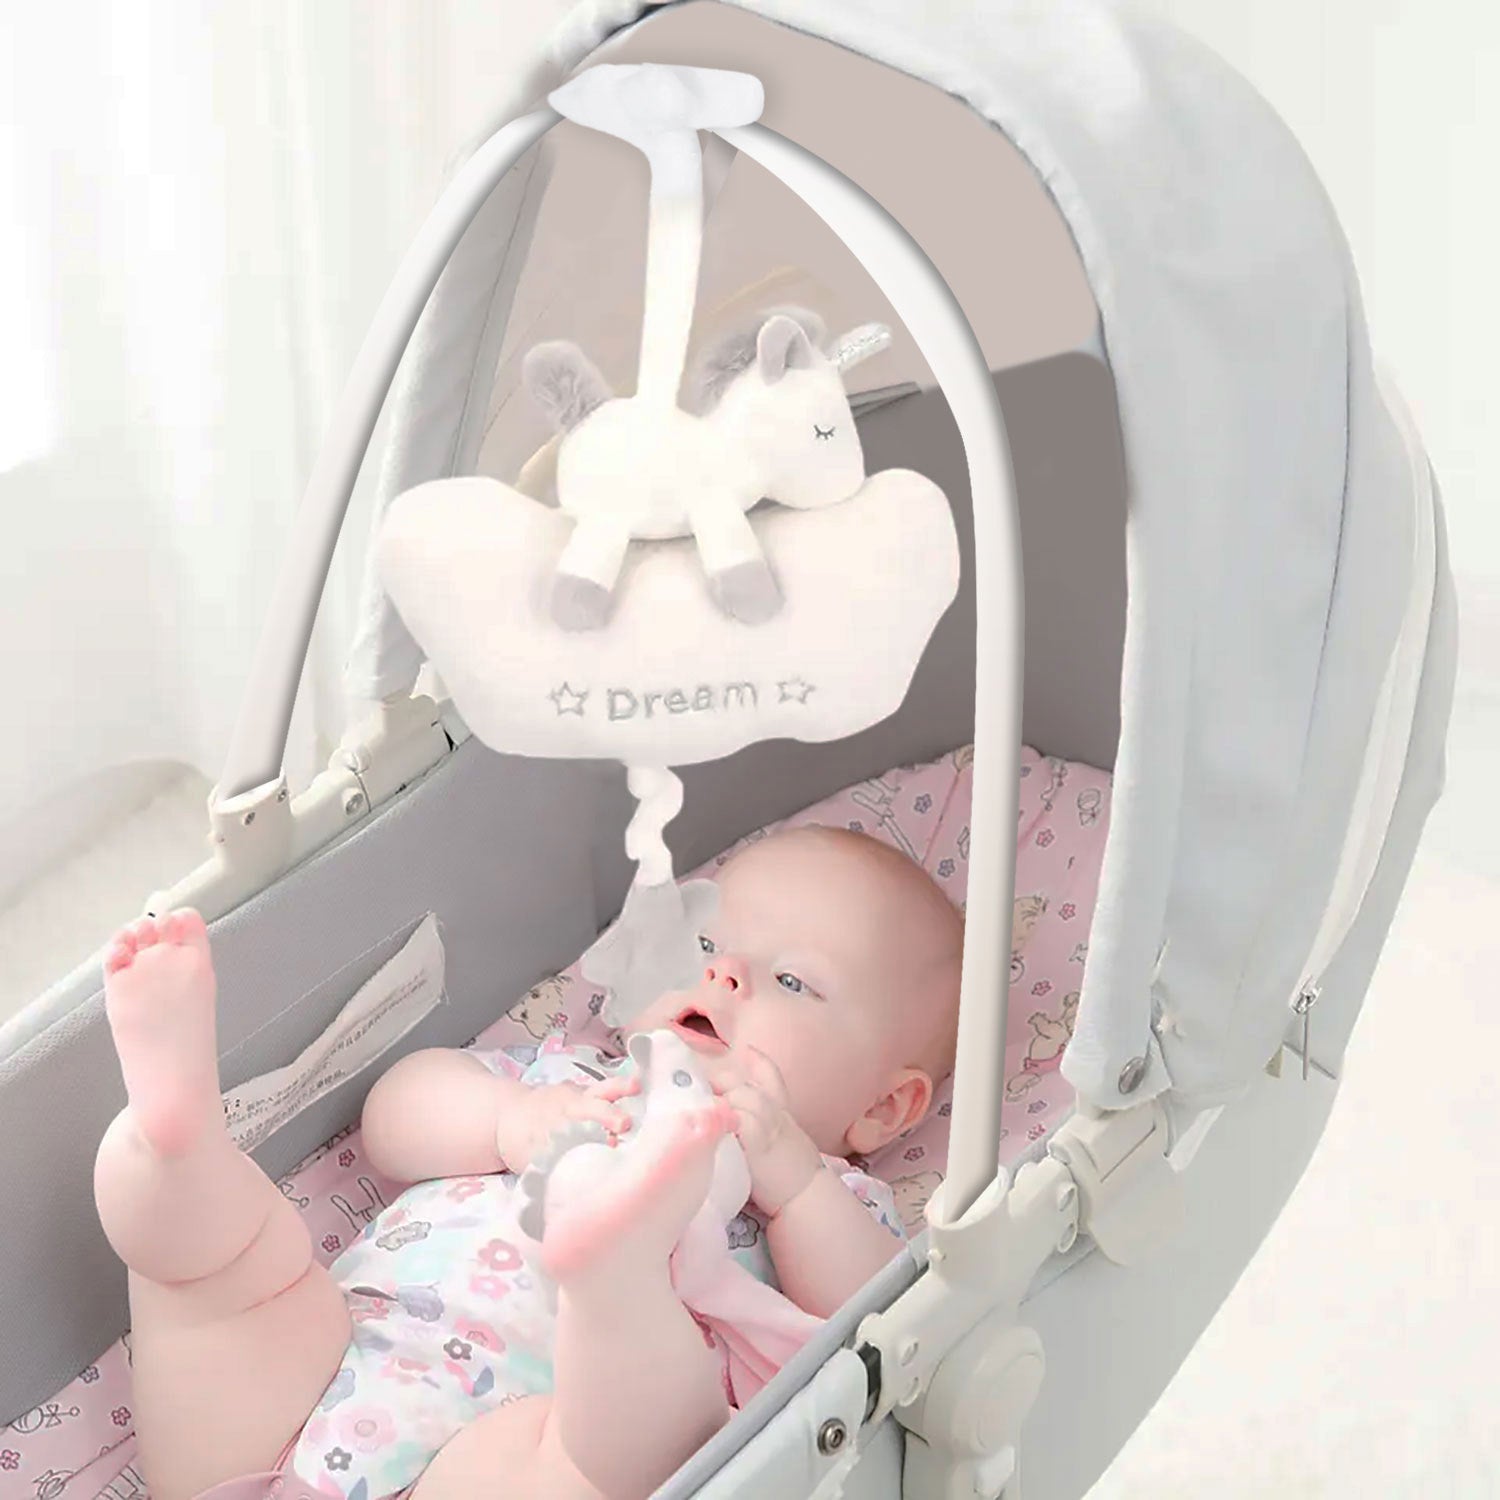 Baby Moo Sleepy Unicorn Hanging Musical Pulling Toy - White